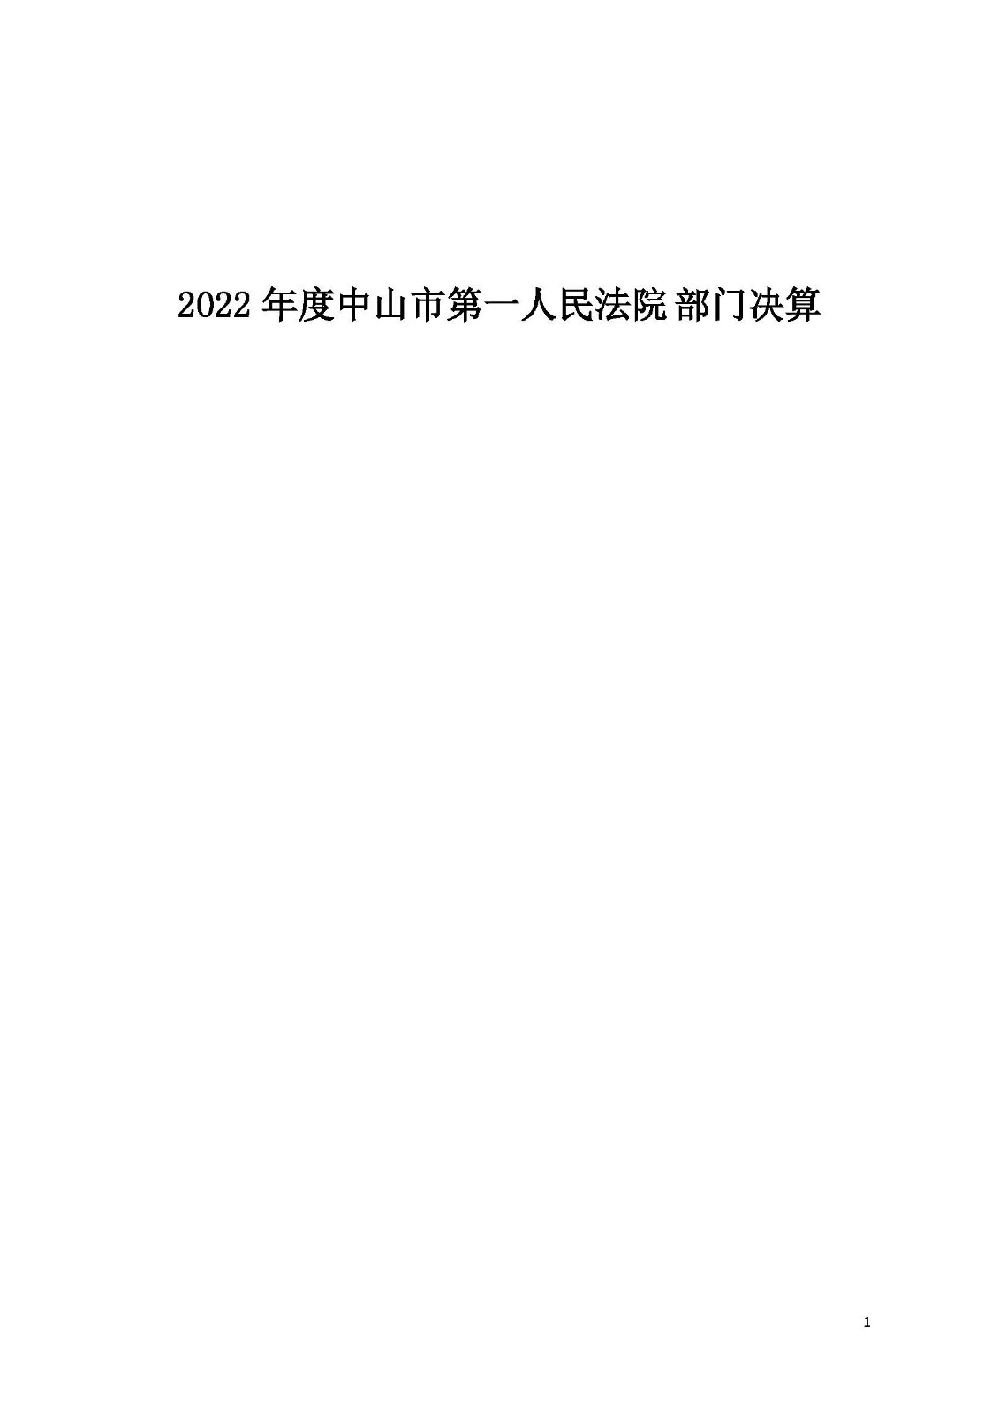 2022年度中山市第一人民法院部门决算_页面_01.jpg